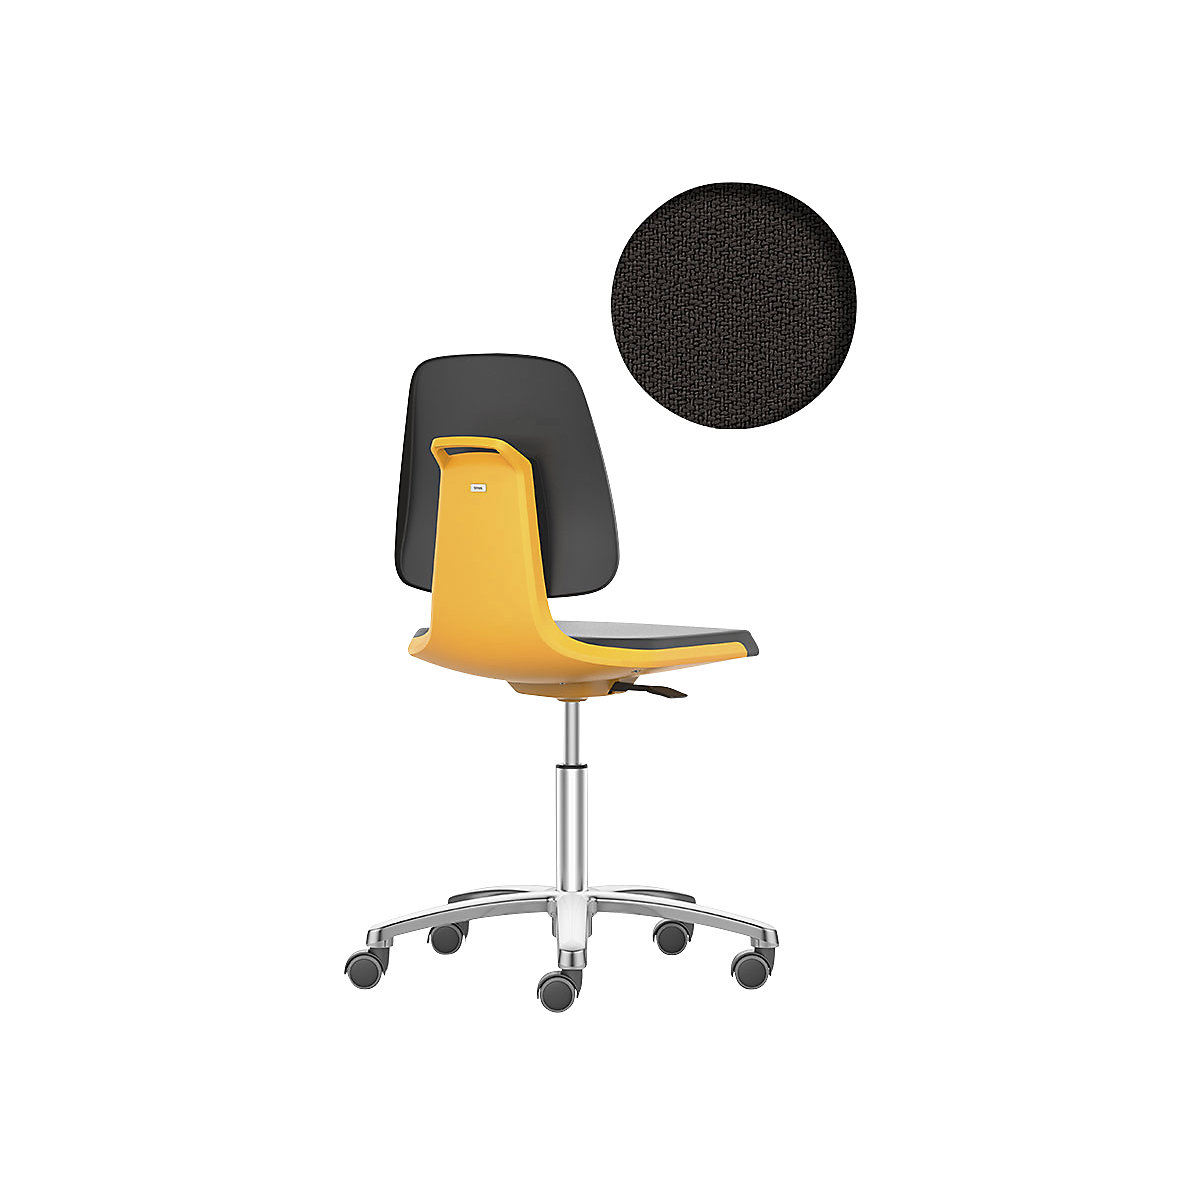 Pracovná otočná stolička LABSIT – bimos, päť nôh s kolieskami, sedadlo s látkovým poťahom, oranžová-26